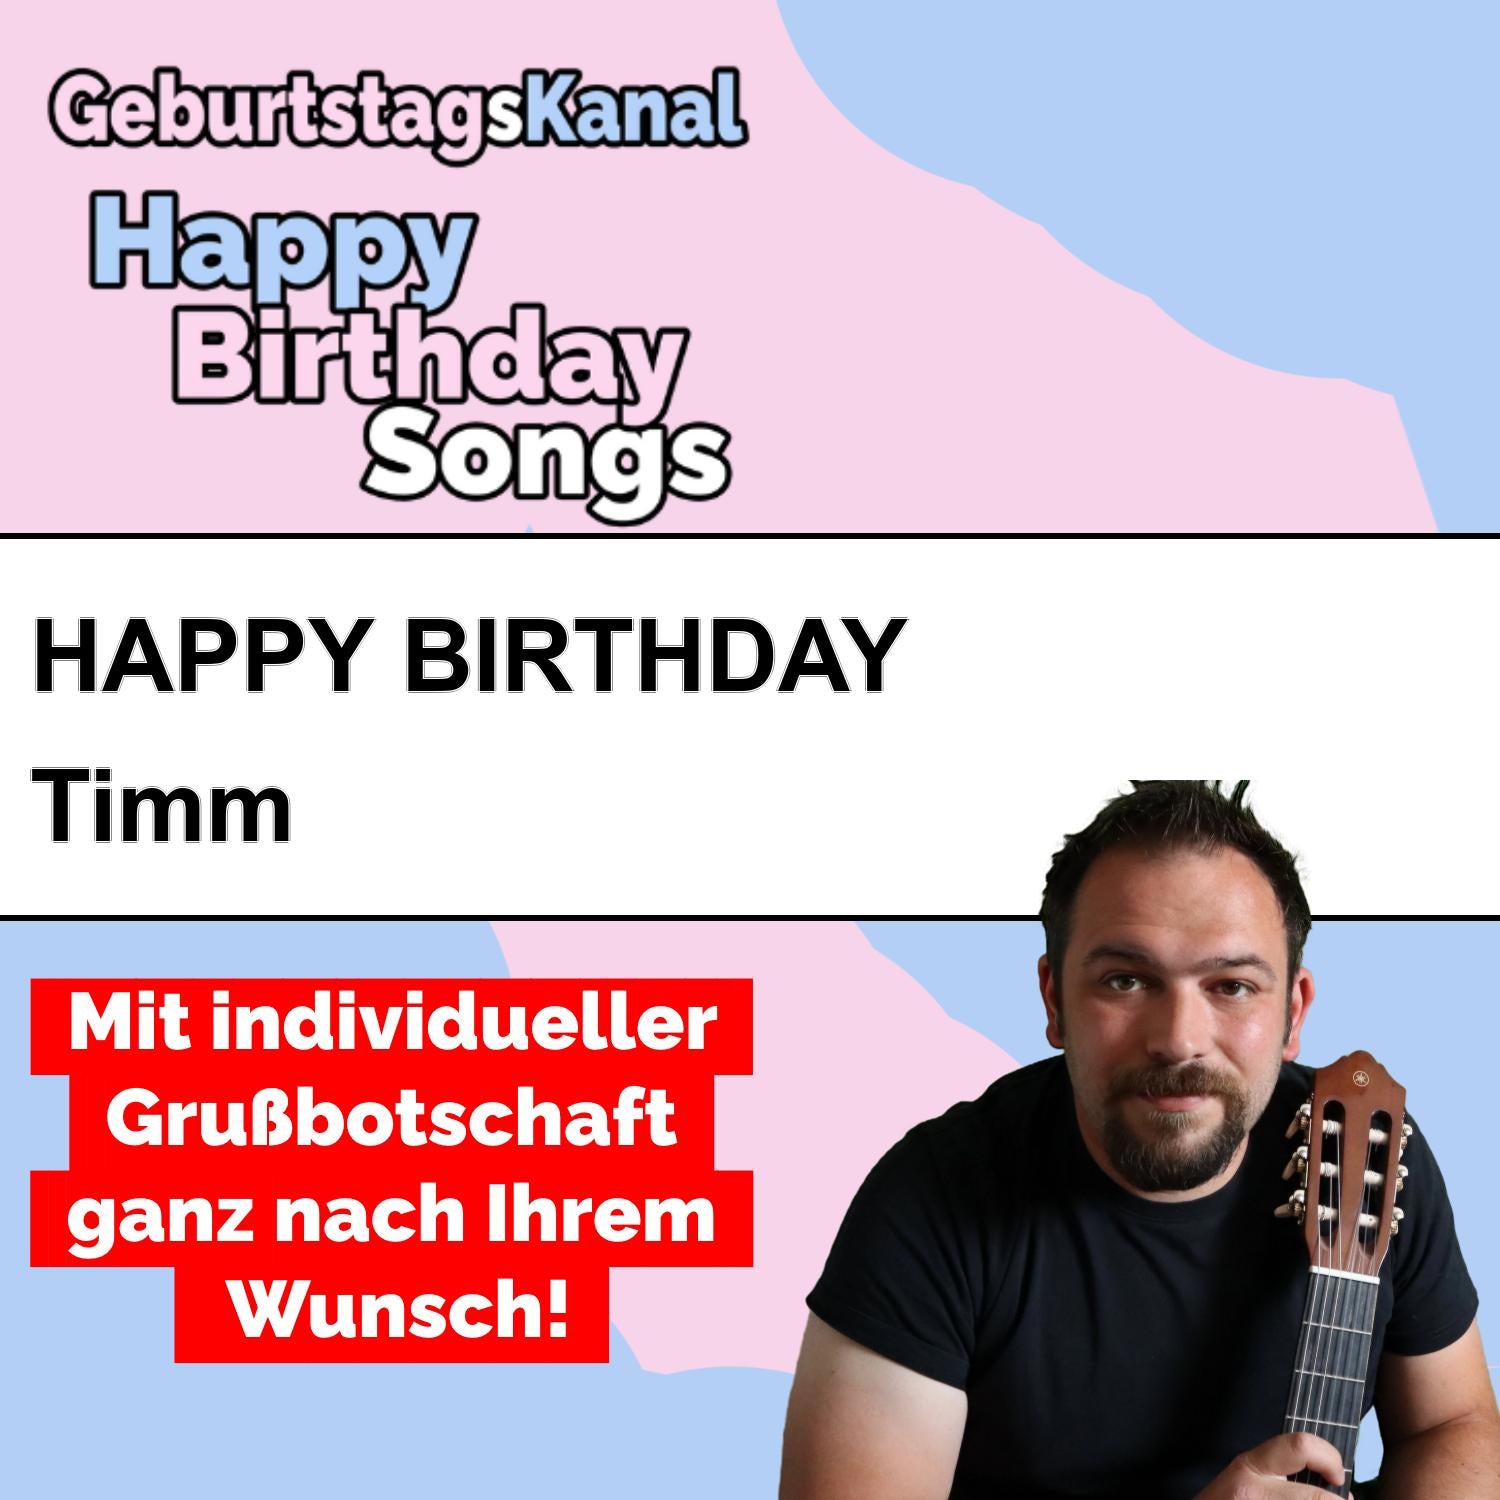 Produktbild Happy Birthday to you Timm mit Wunschgrußbotschaft